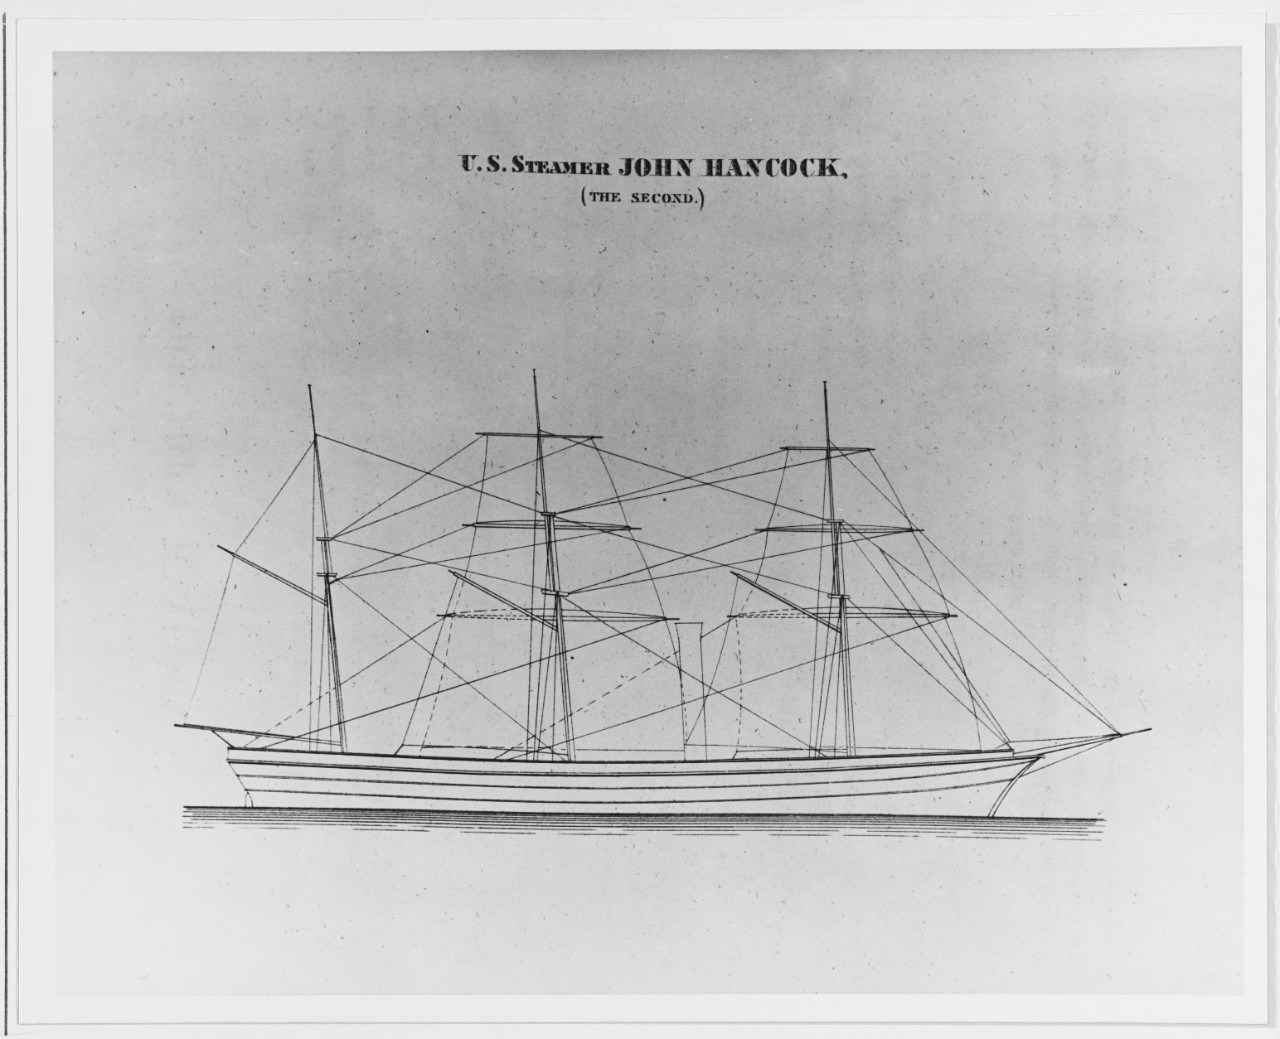 USS JOHN HANCOCK (1850-1865)